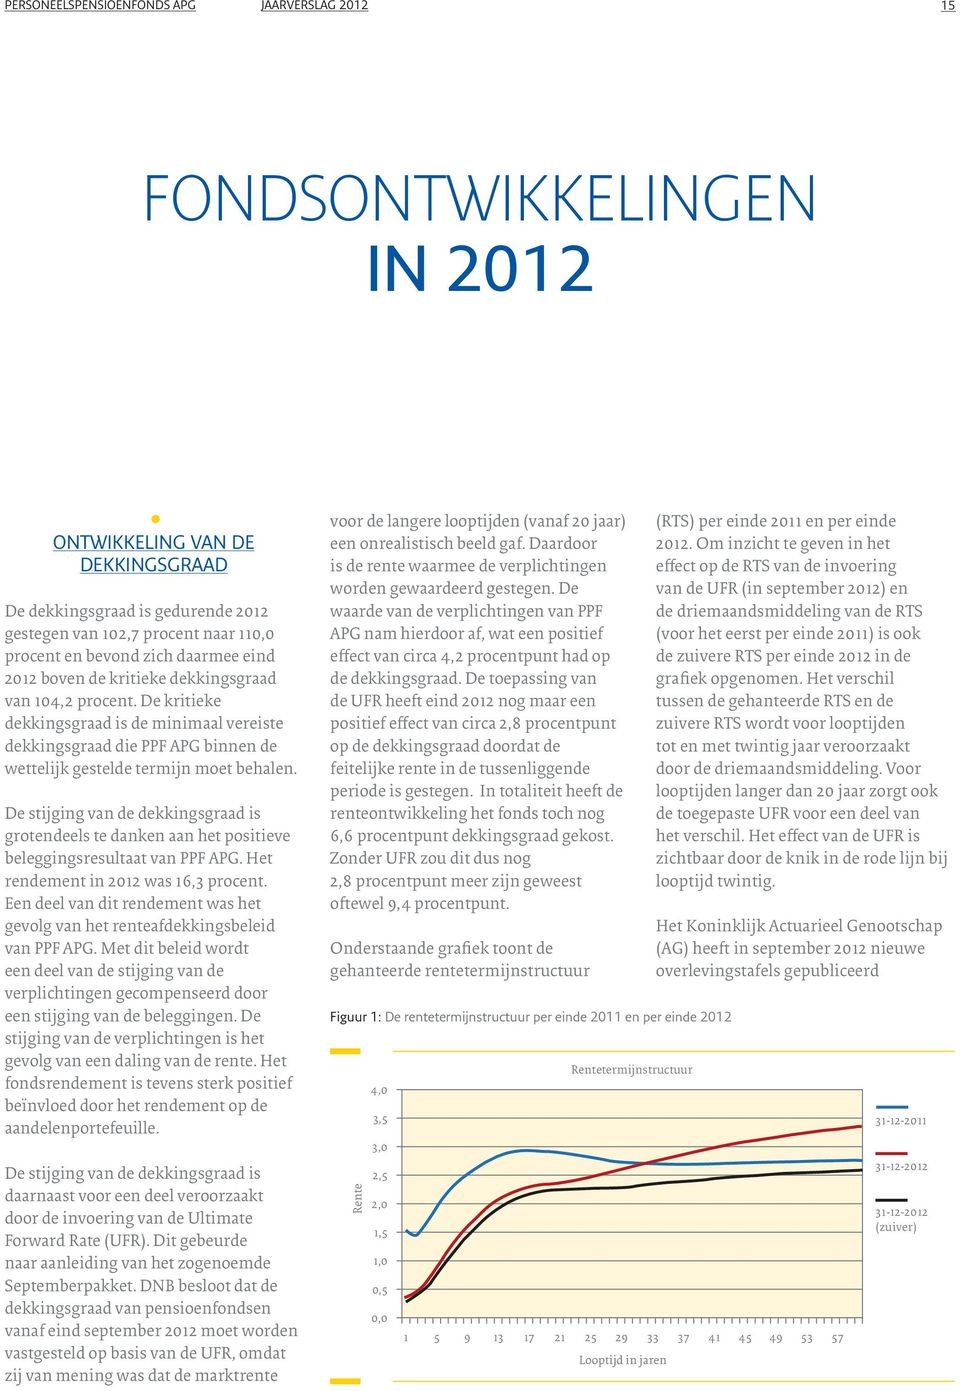 De stijging van de dekkingsgraad is grotendees te danken aan het positieve beeggingsresutaat van PPF APG. Het rendement in 2012 was 16,3 procent.